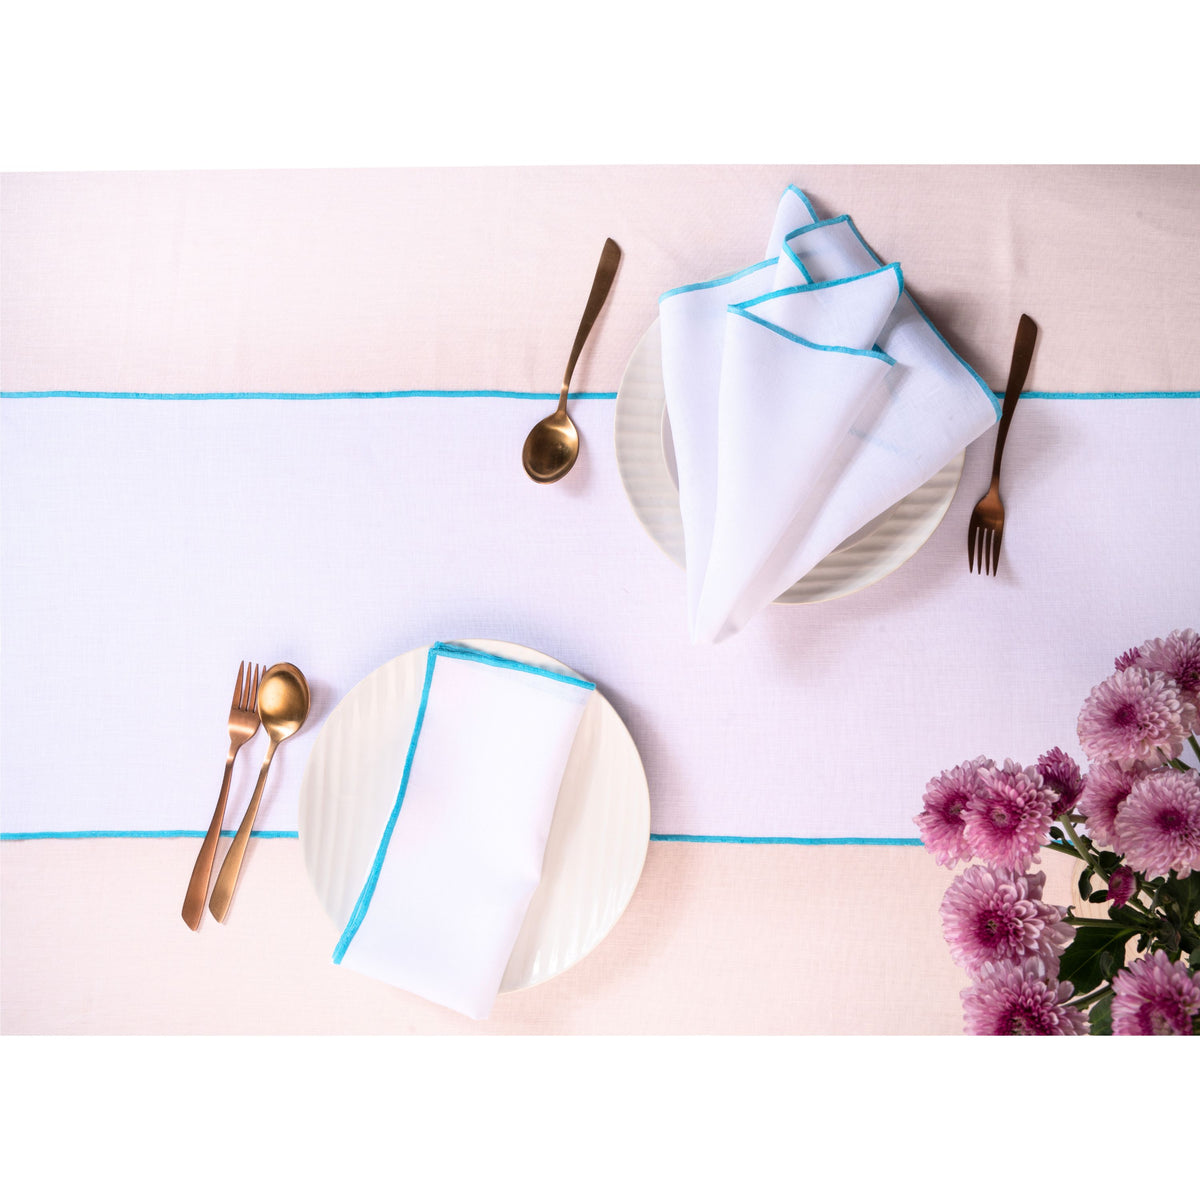 White & Blue Linen Table Runner- Marrow Edge